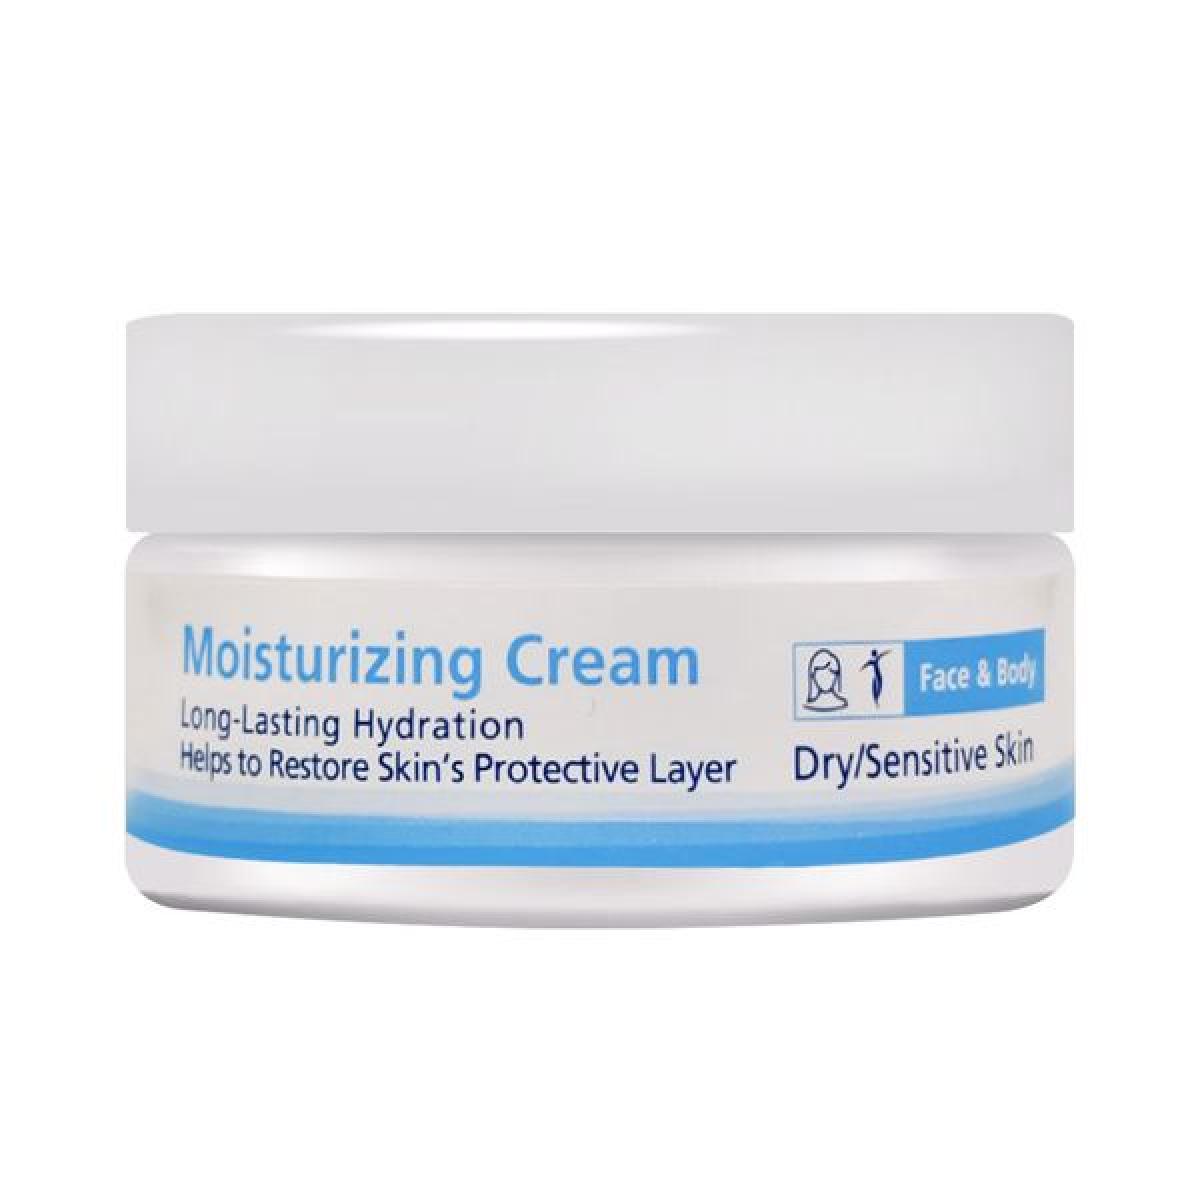 کرم مرطوب کننده - Moisturizing Cream